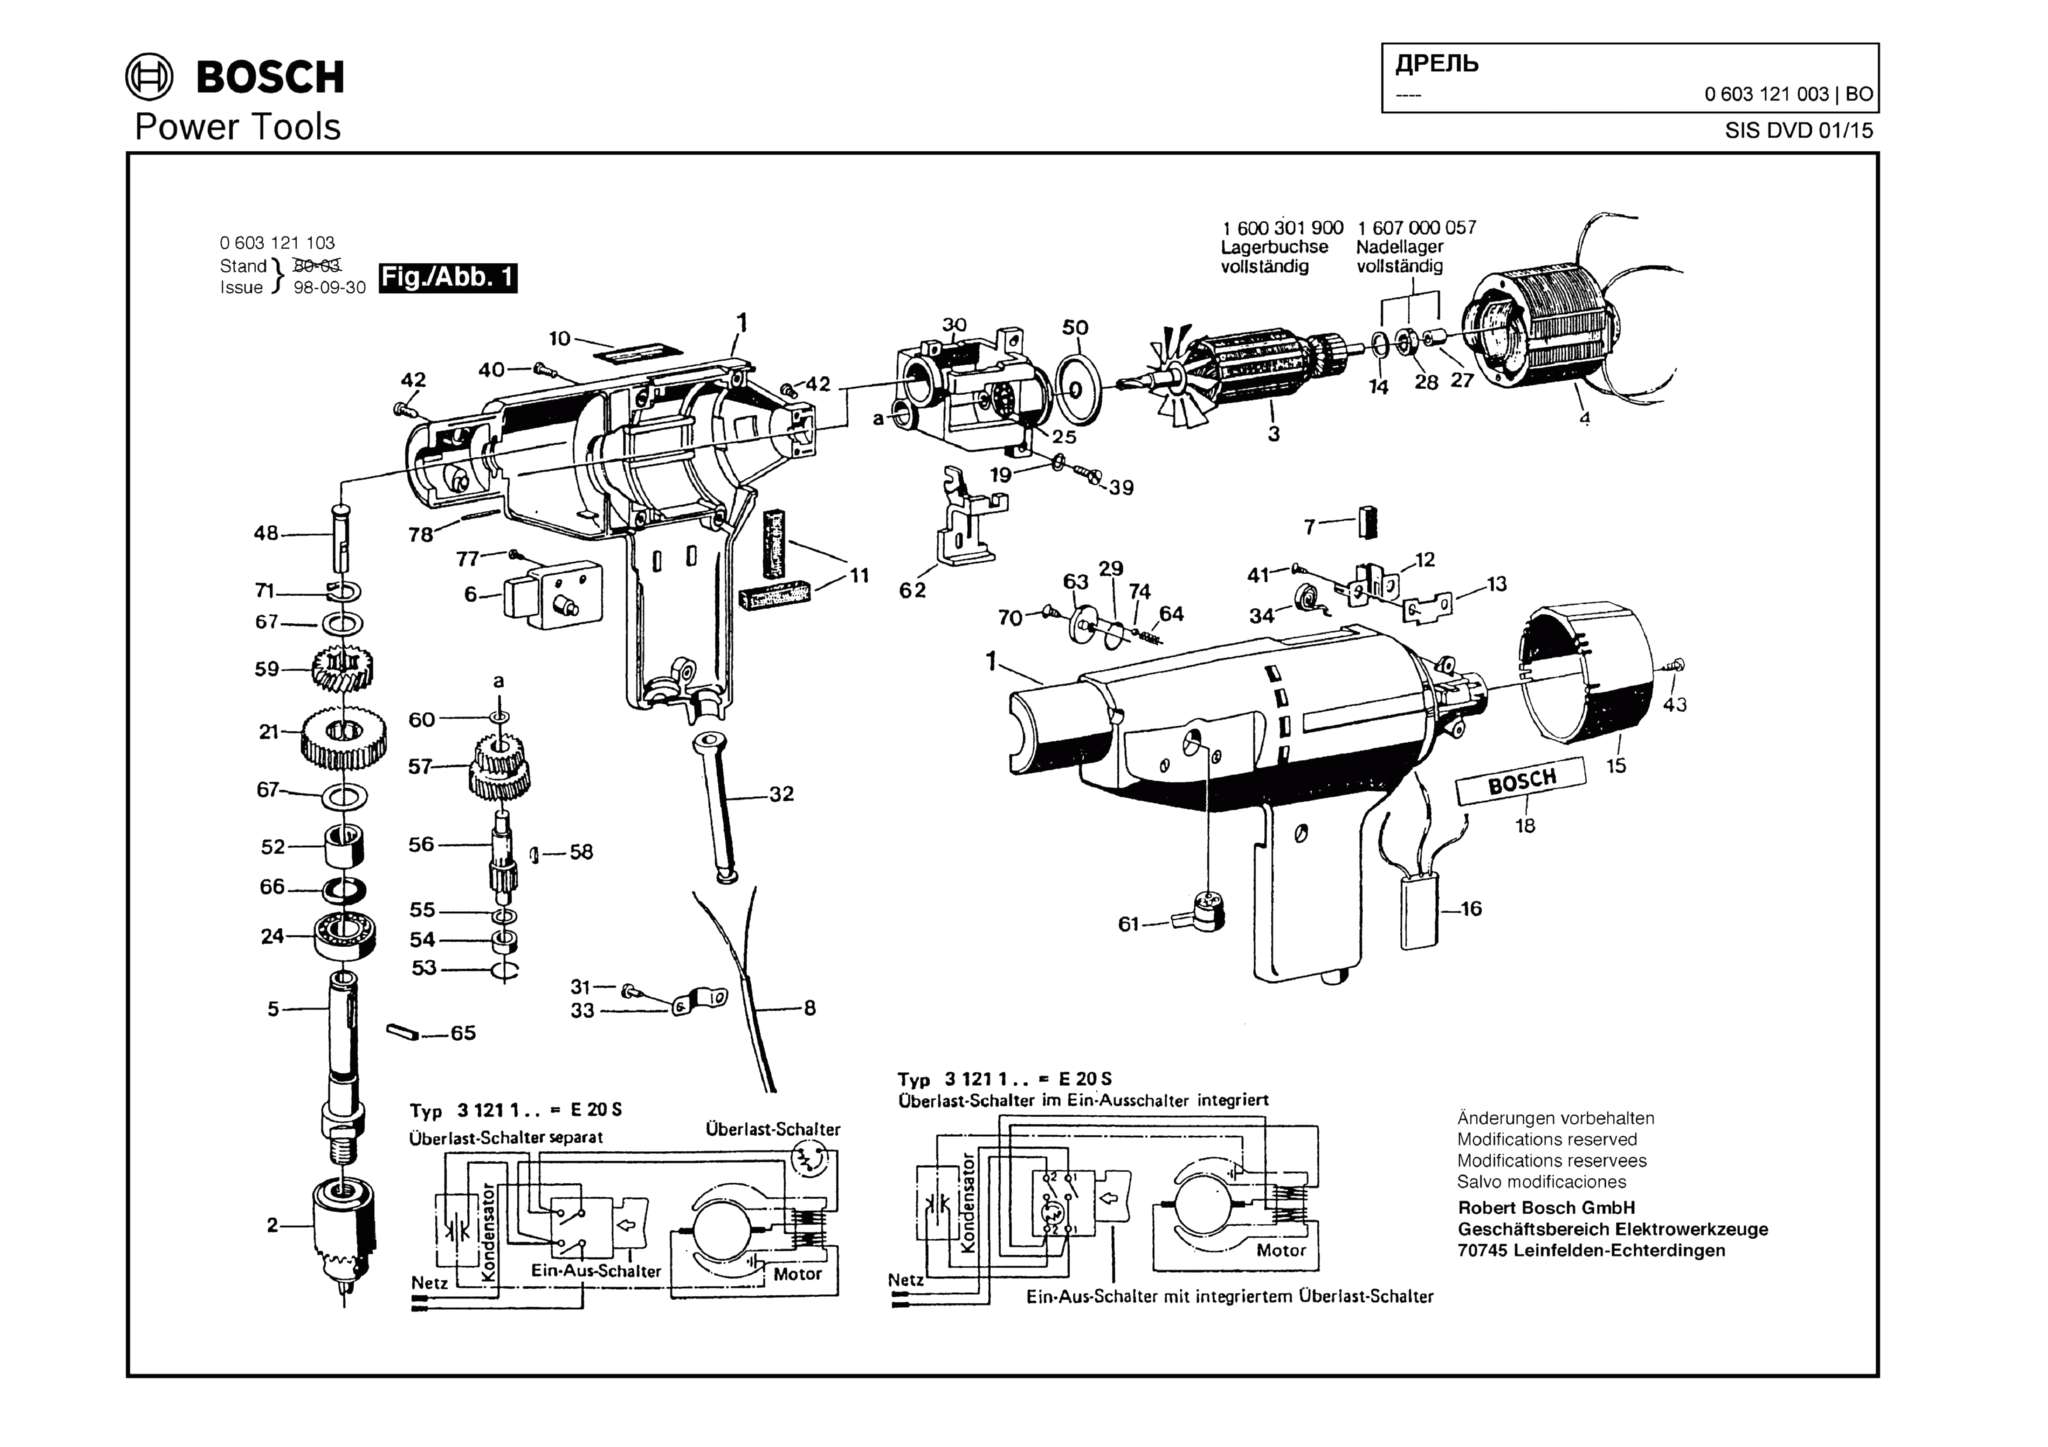 Запчасти, схема и деталировка Bosch (ТИП 0603121003)